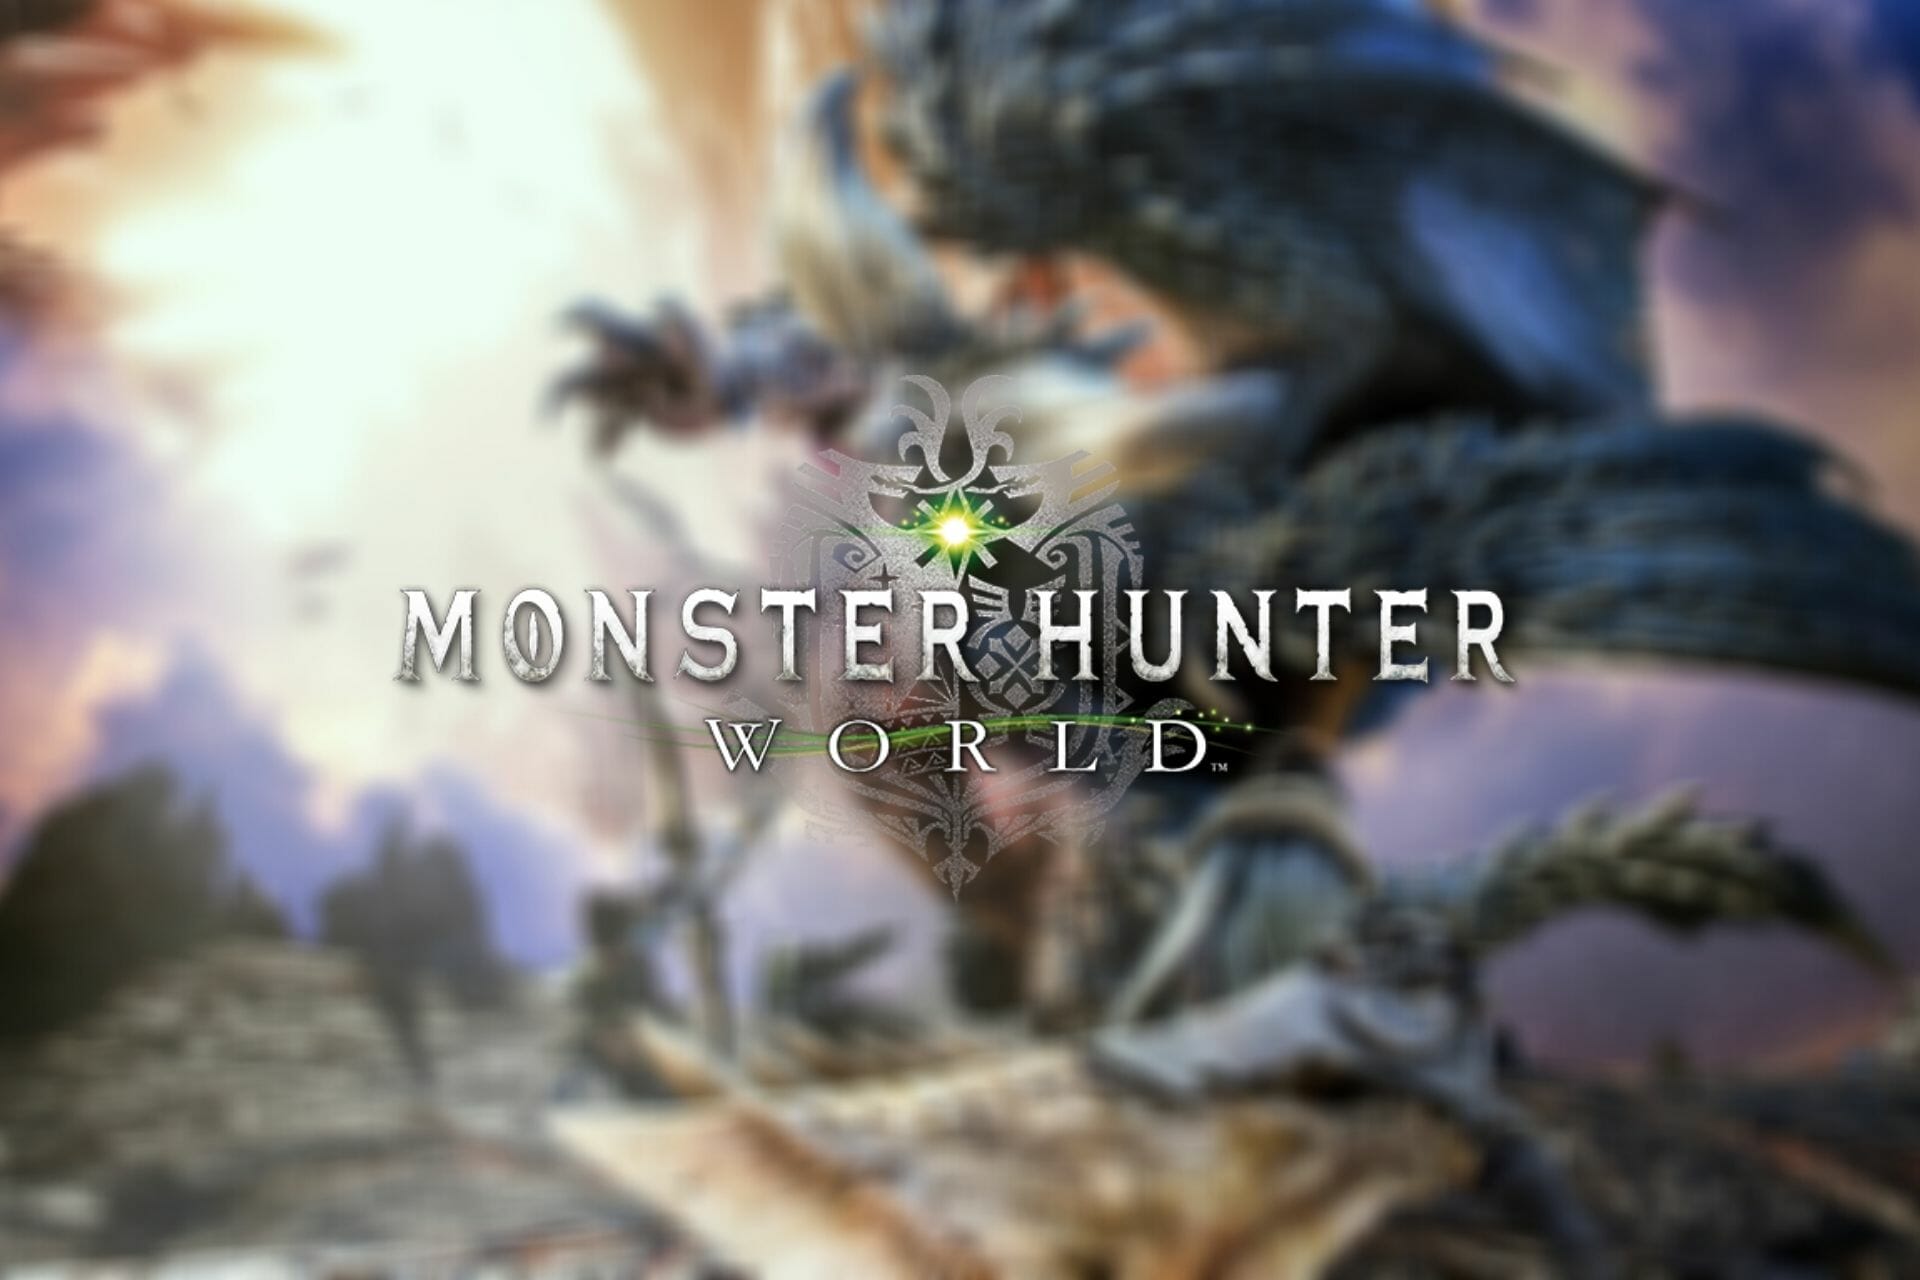 Monster Hunter World Packet loss